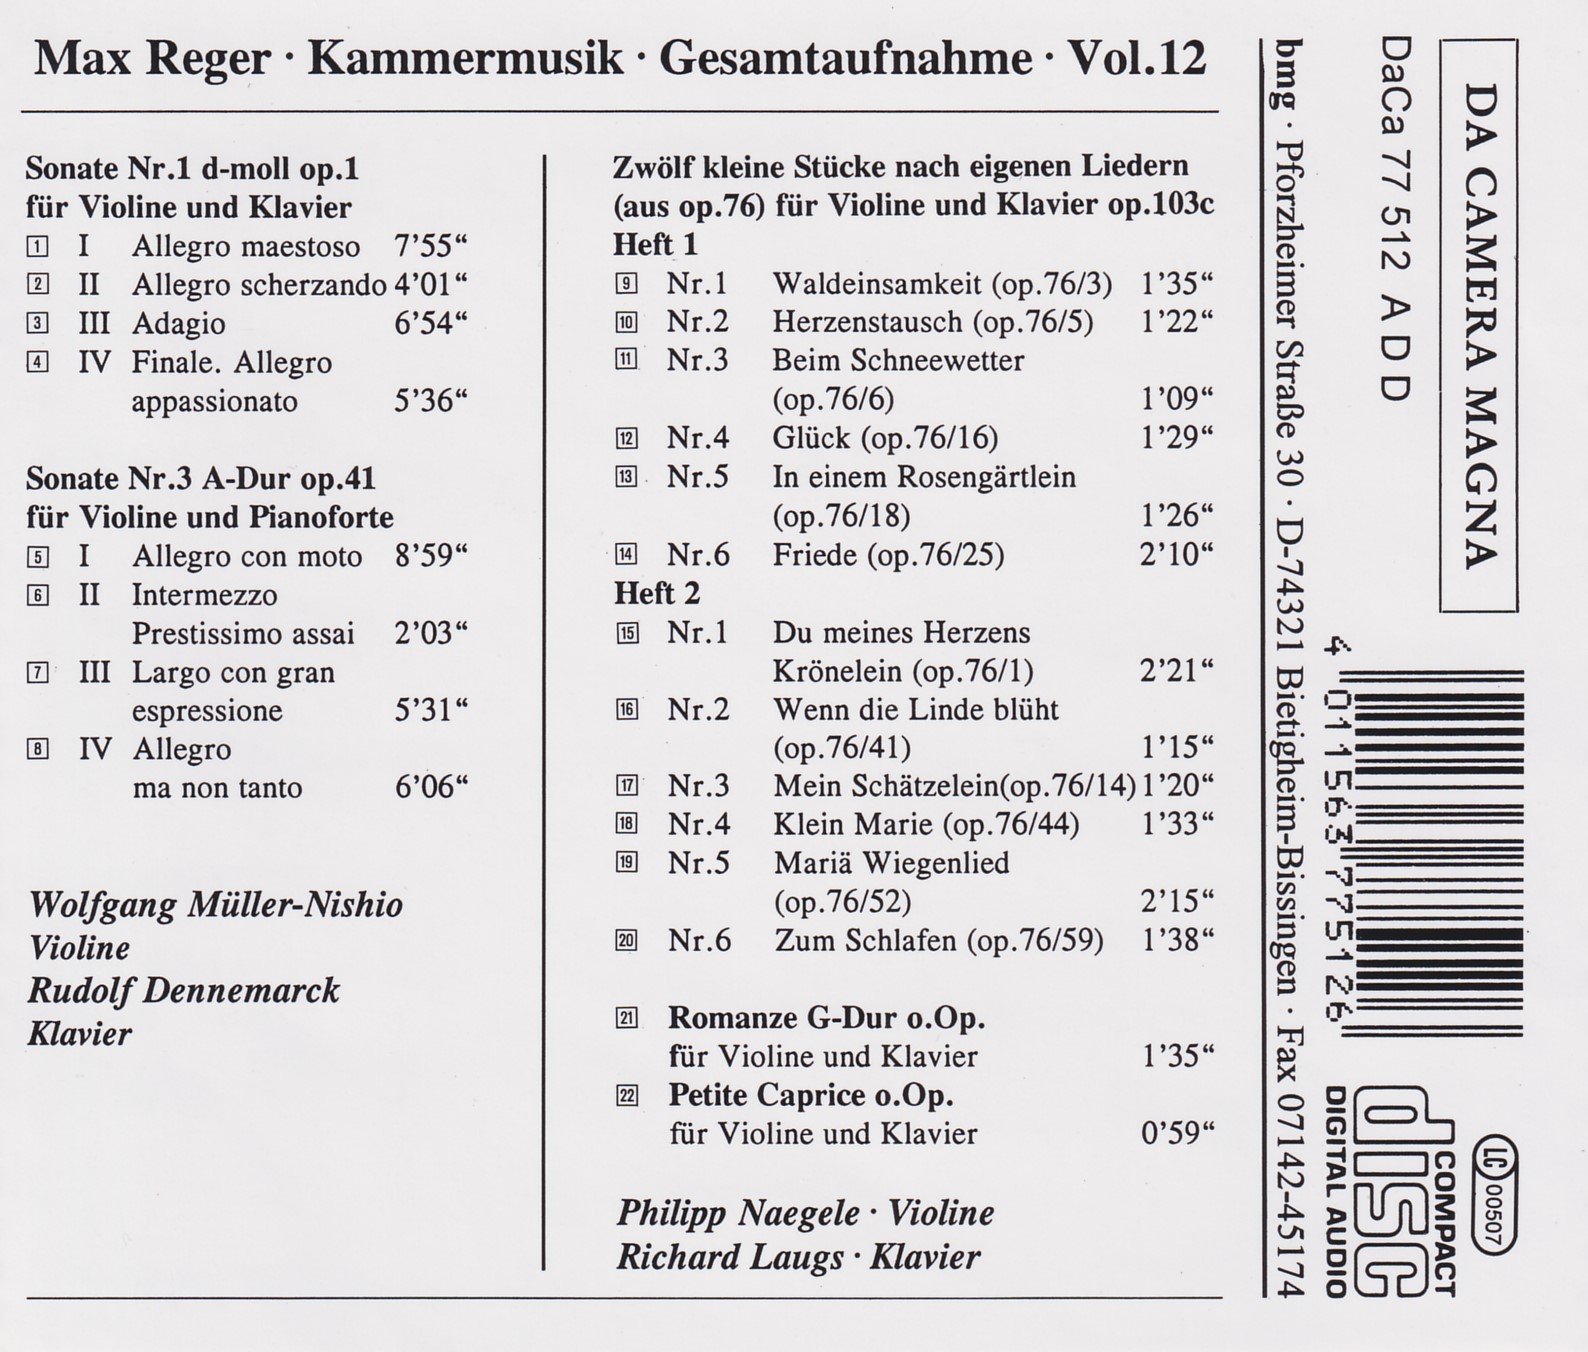 Max Reger - Kammermusik komplett Vol. 12